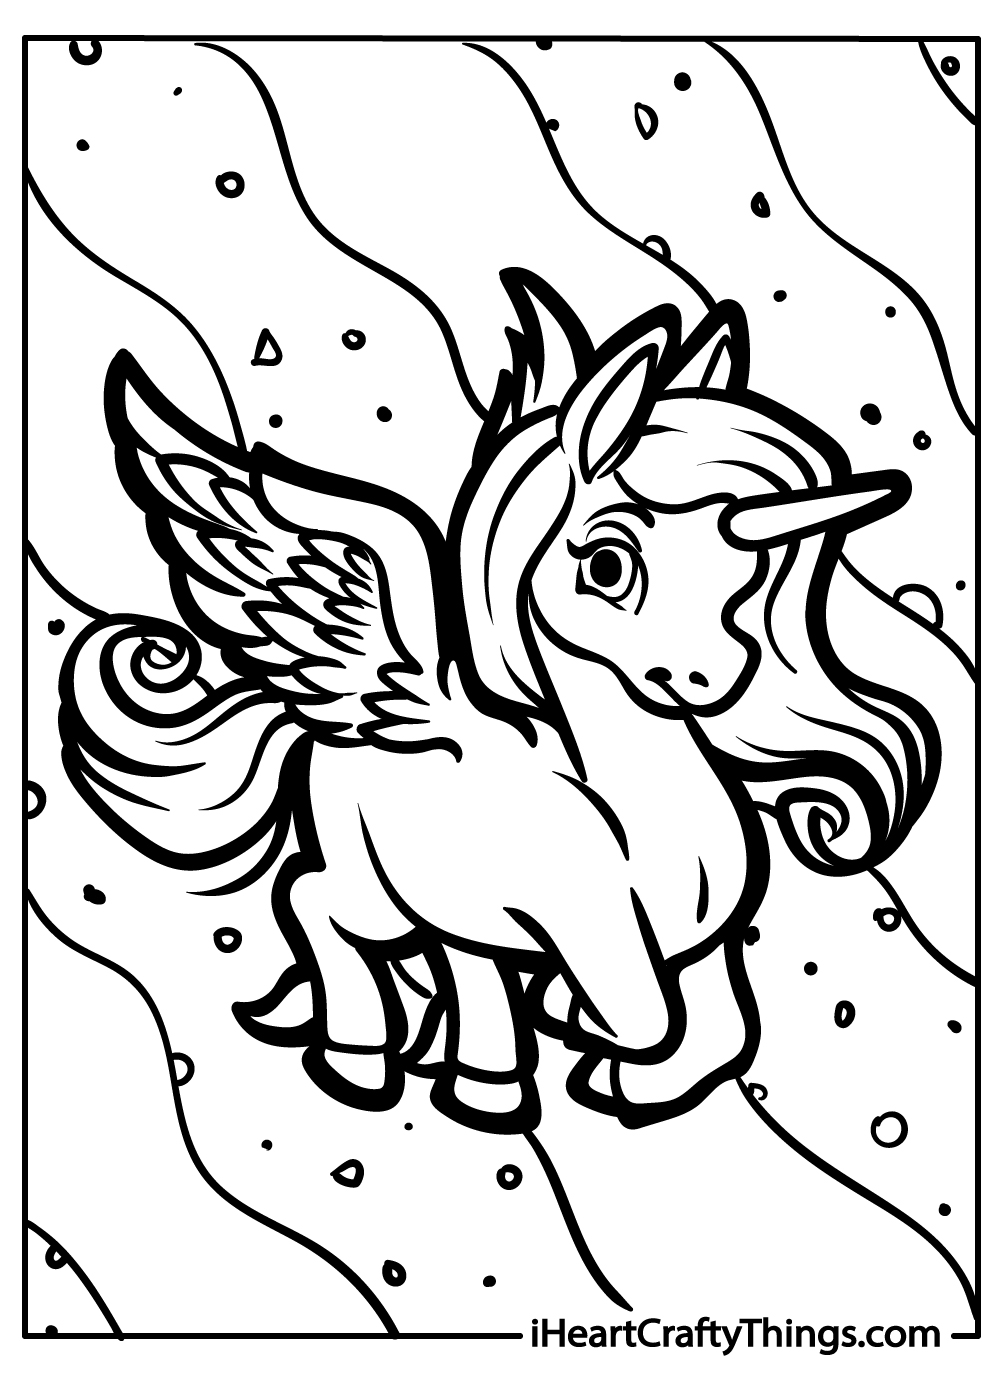 Pegasus free coloring pdf for kids